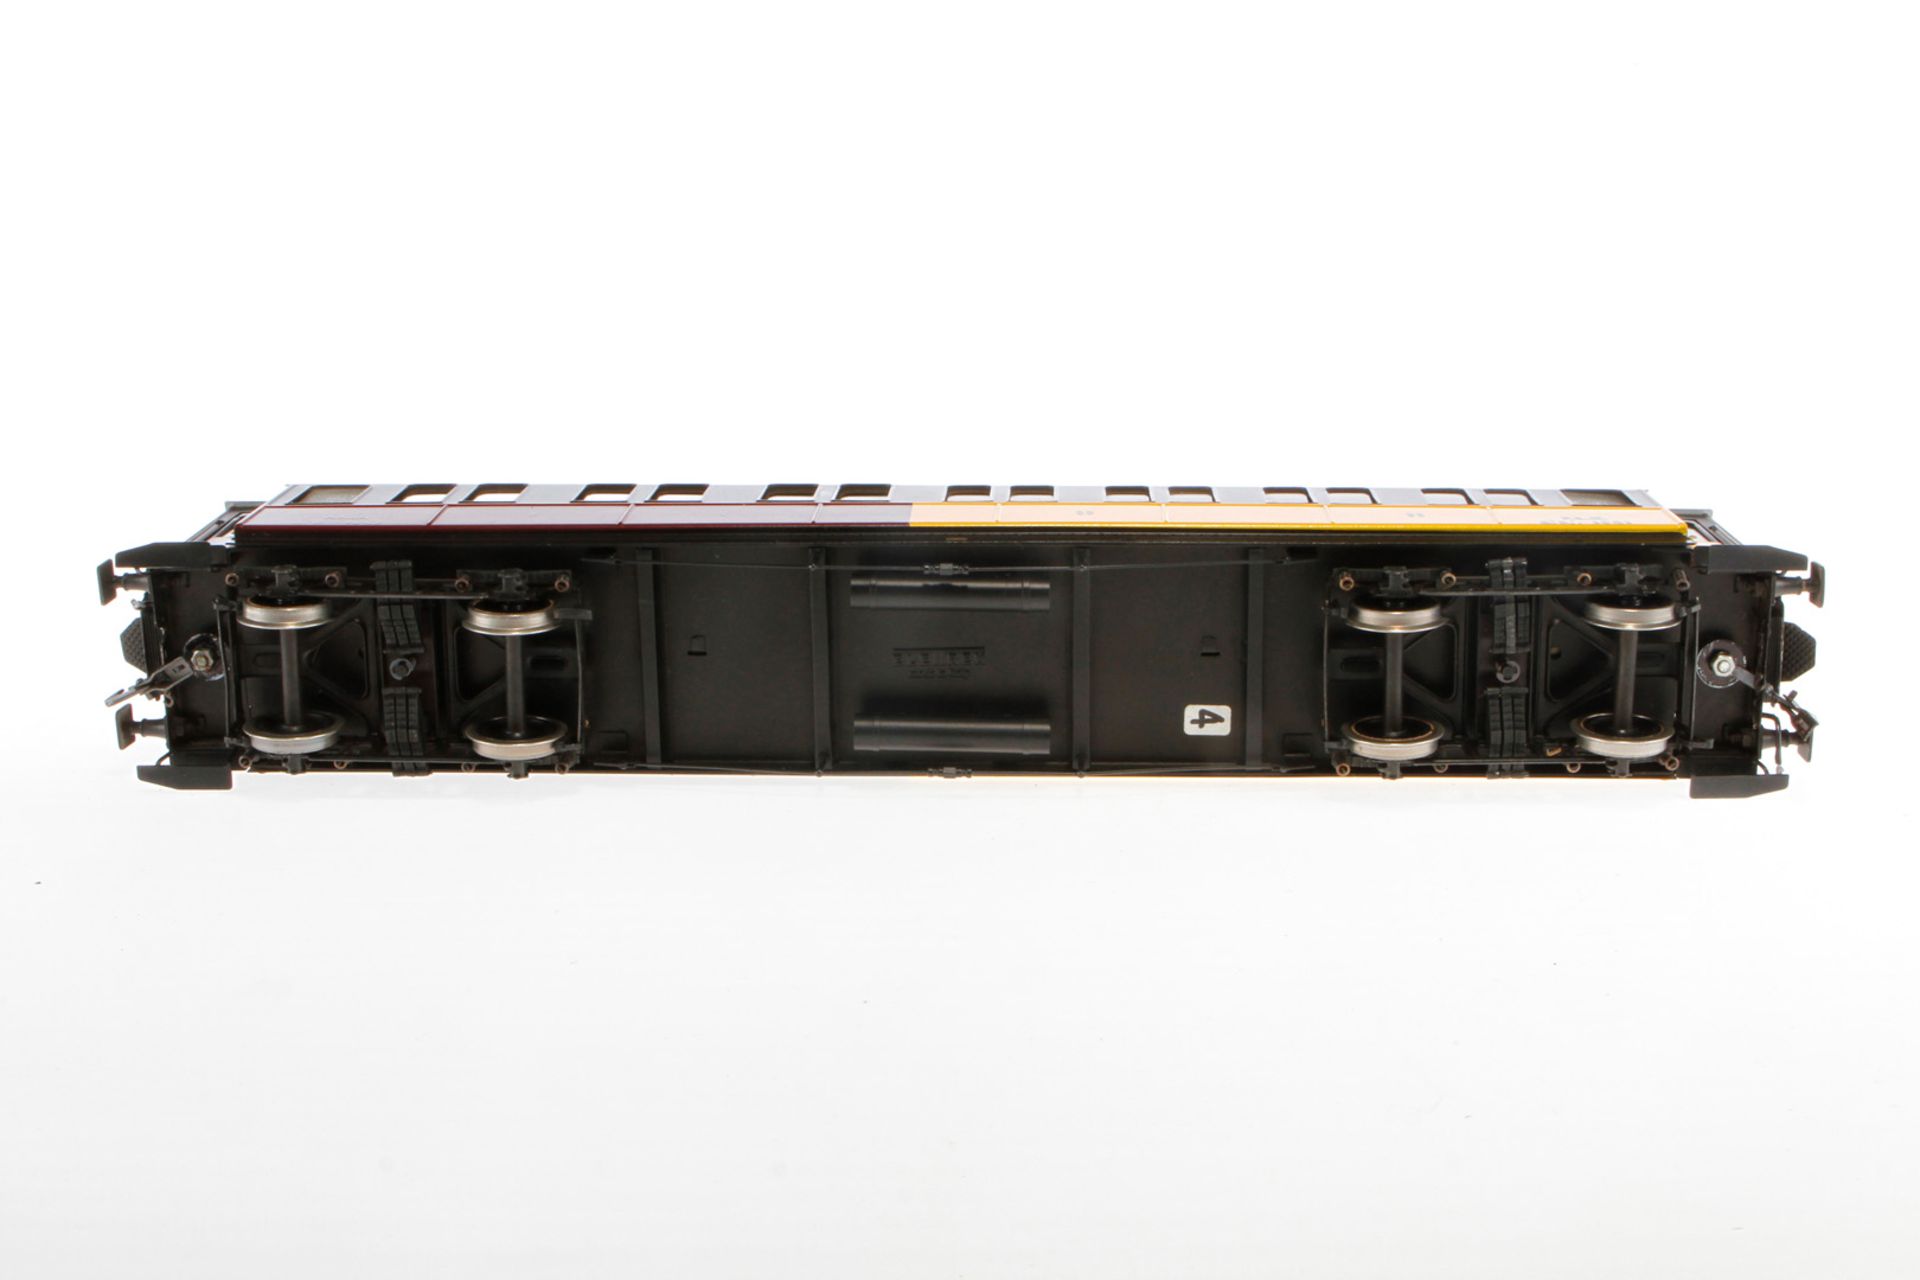 Elettren franz. Personenwagen 1341 PLM, Spur 0, 1. und 2. Klasse, schwarz/rot/gelb, mit - Image 3 of 3